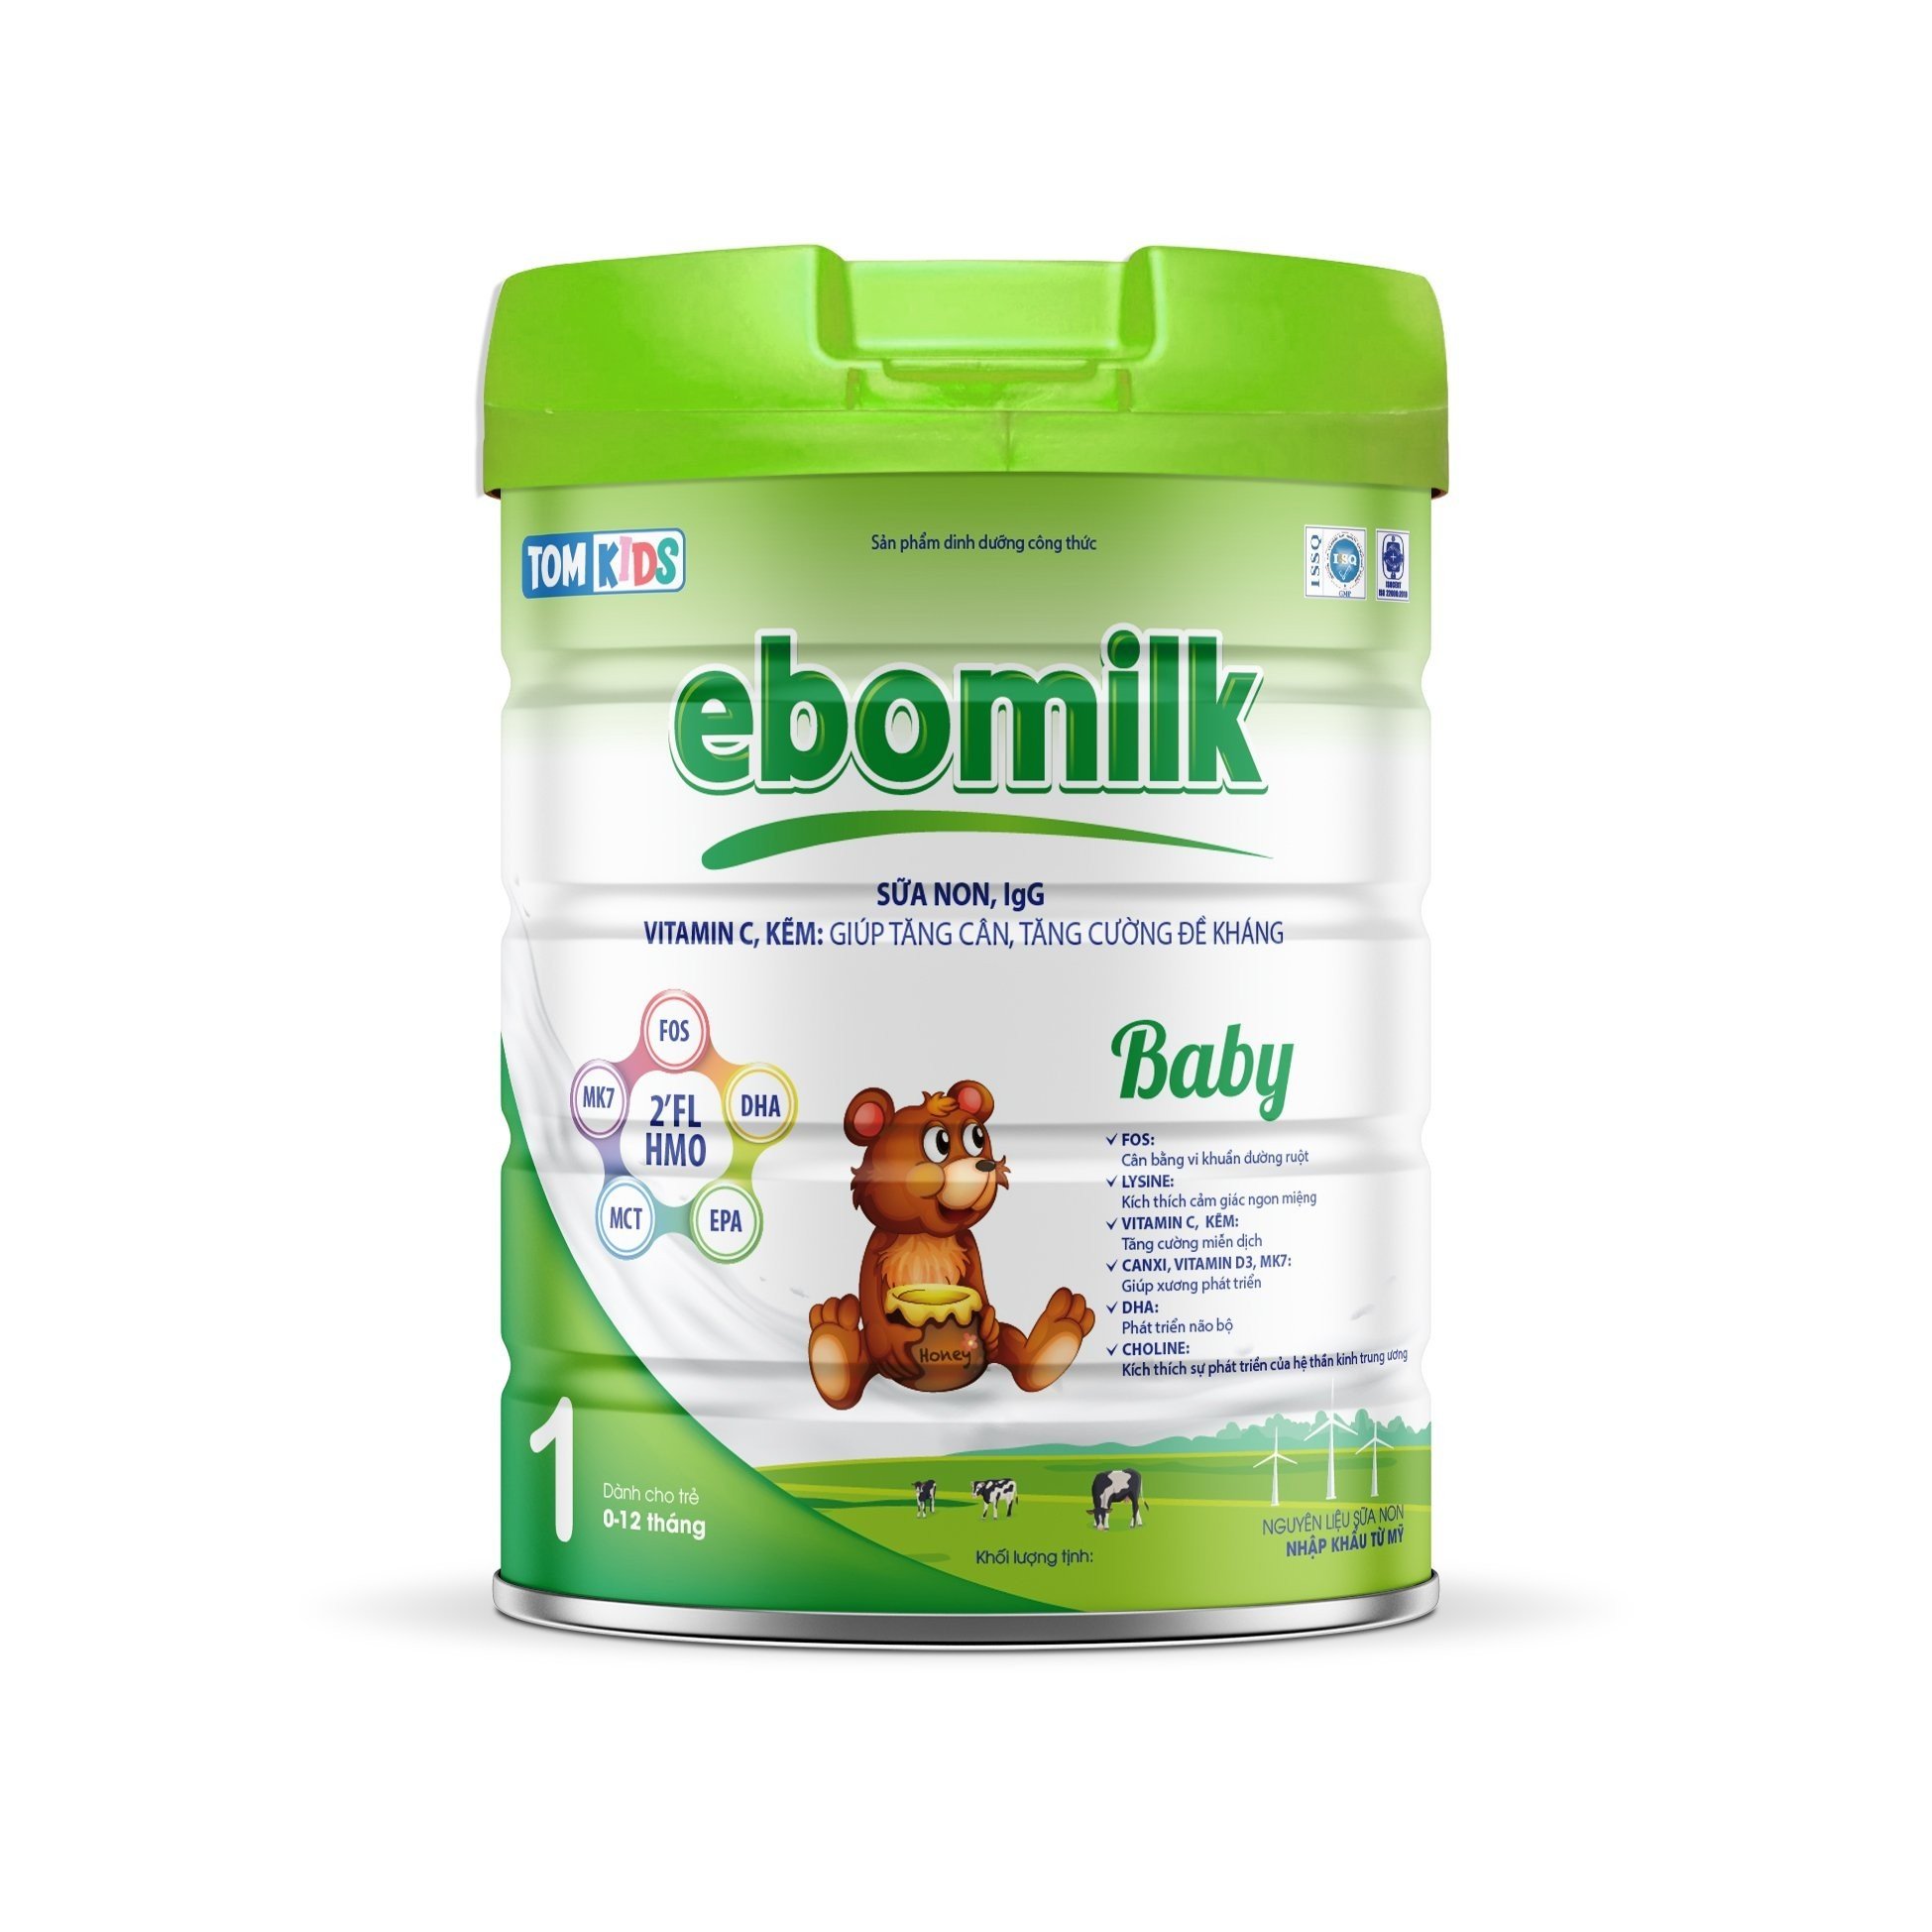 Sữa Ebomilk có an toàn và tốt như lời đồn hay không? - 4